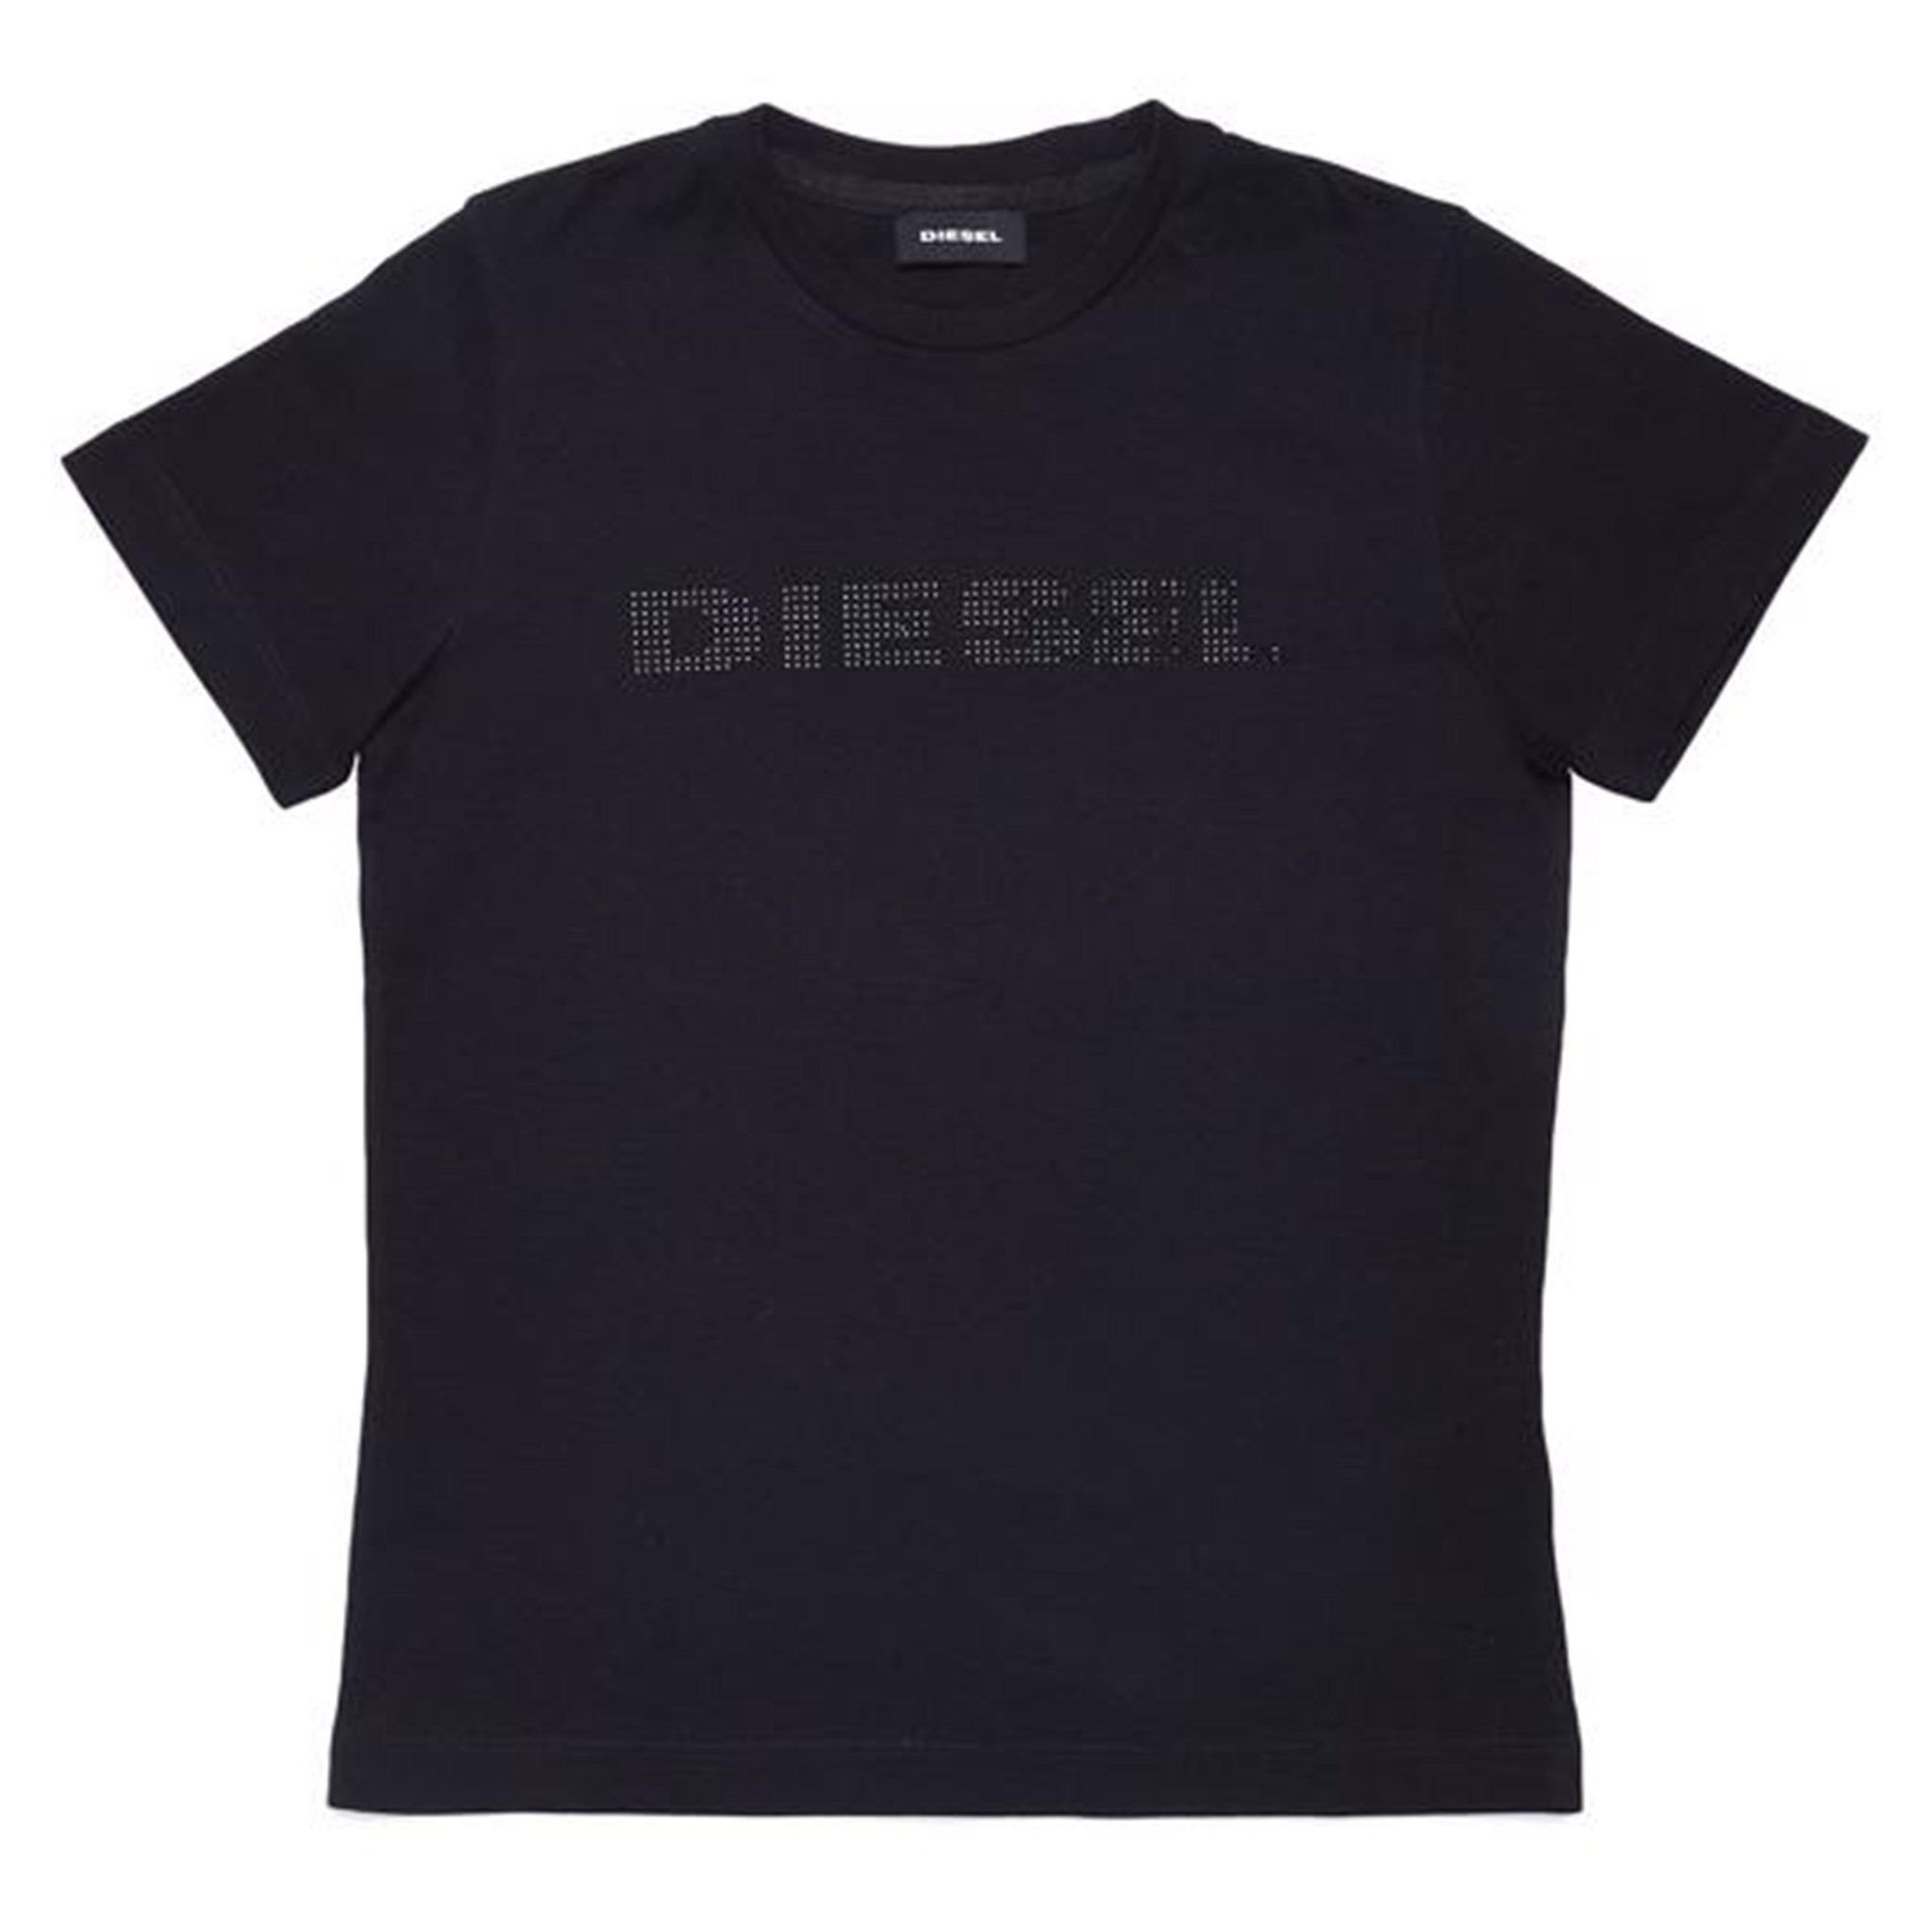 Diesel Laviay Maglietta T-shirt Sort